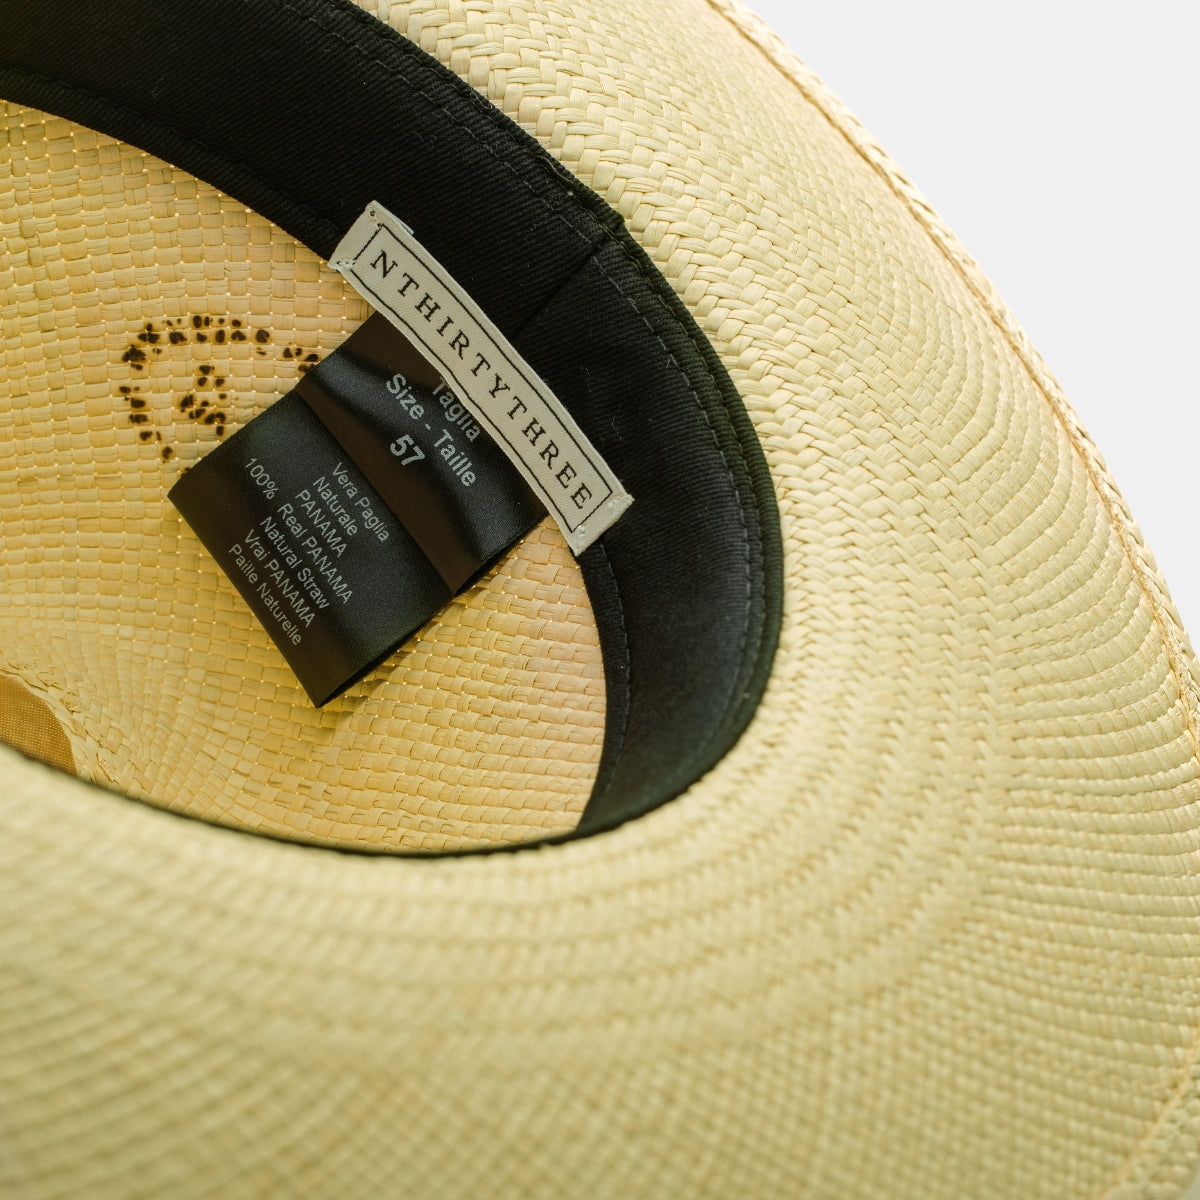 Summer Hat, Straw Hat, Cap, Sommerhut, Damen Strohhut, Strohhut für Männer, Fedora, Sonnenhut, Strandhut, Luxus Hut, luxury summer hat, designer sun hat,NTHIRTYTHREE PURE STRAW HONEY Panama Strohhut, Panama Strawhat, summer hat, n33 hat, headwear, Fedora, hand woven hat, hat made in italy, straw hat for men, straw hat for women, beach hat, sun hat